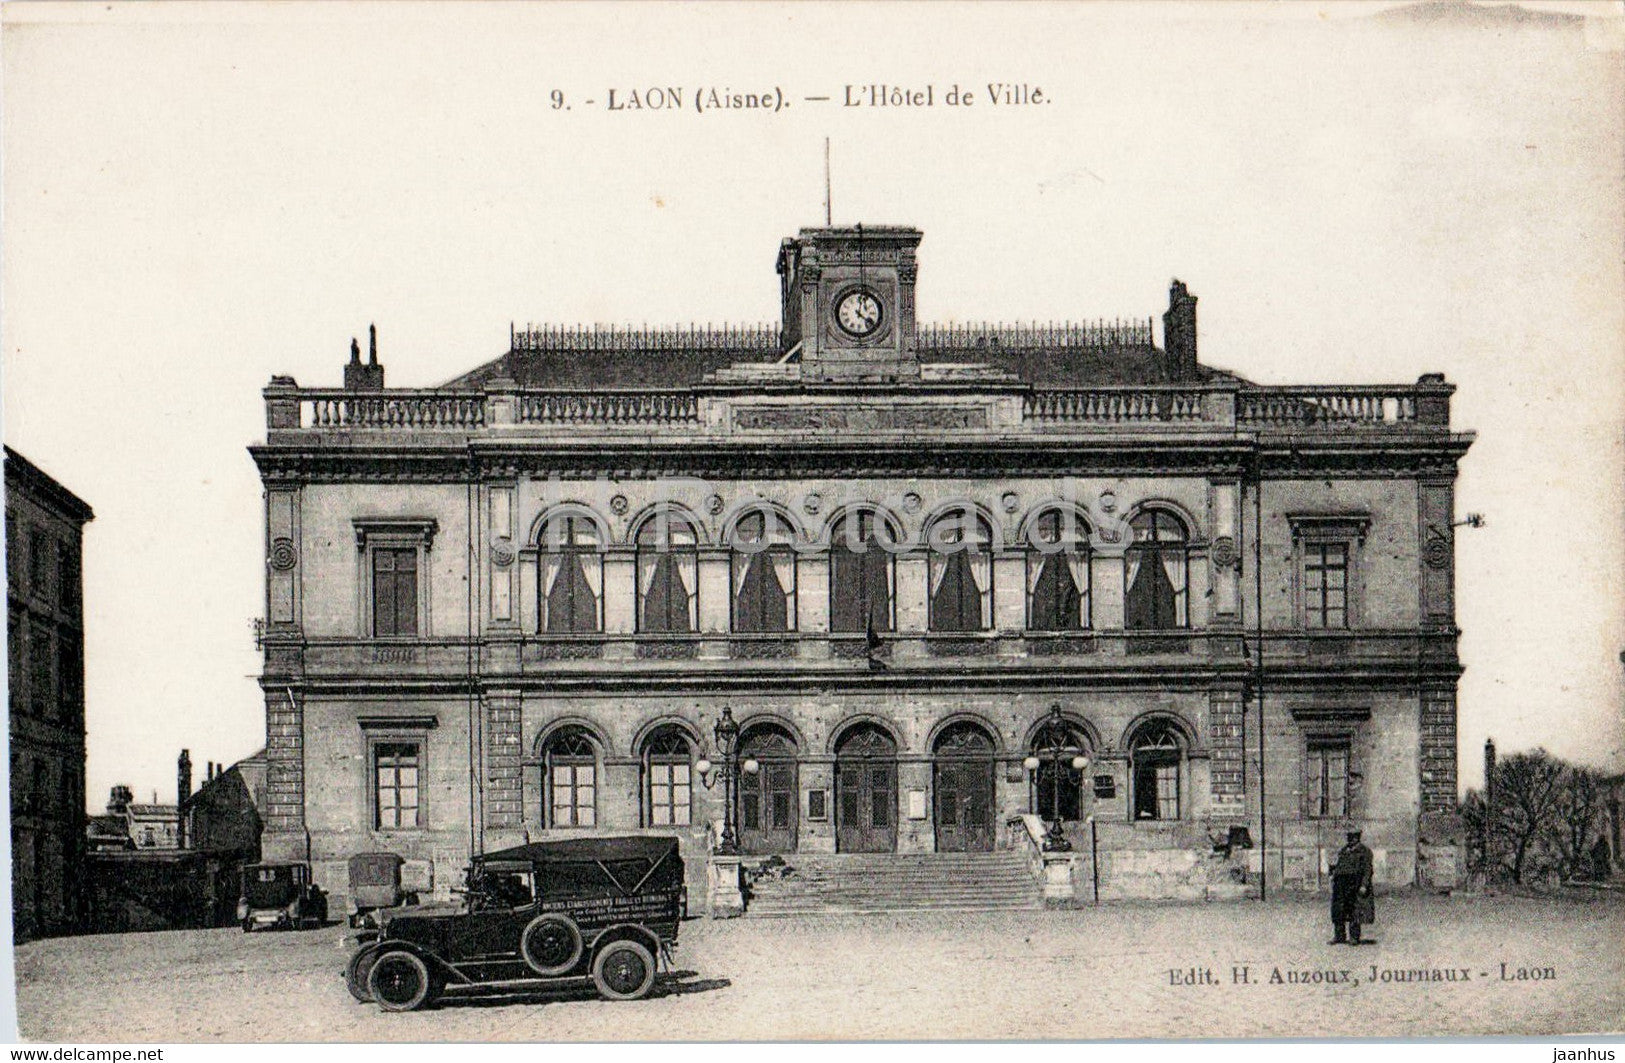 Laon - L'Hotel de Ville - old car - 9 - old postcard - France - unused - JH Postcards